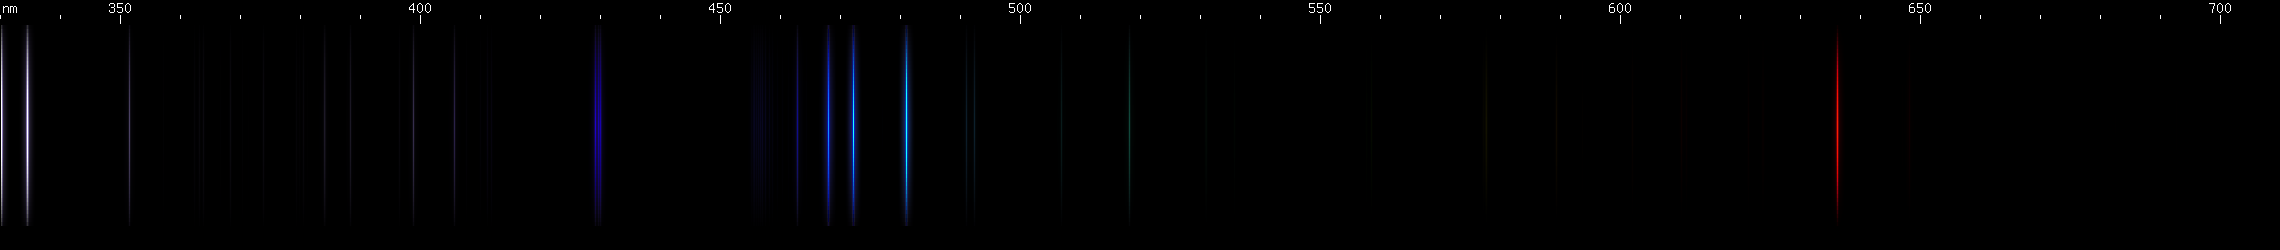 Spectral lines of Zinc.